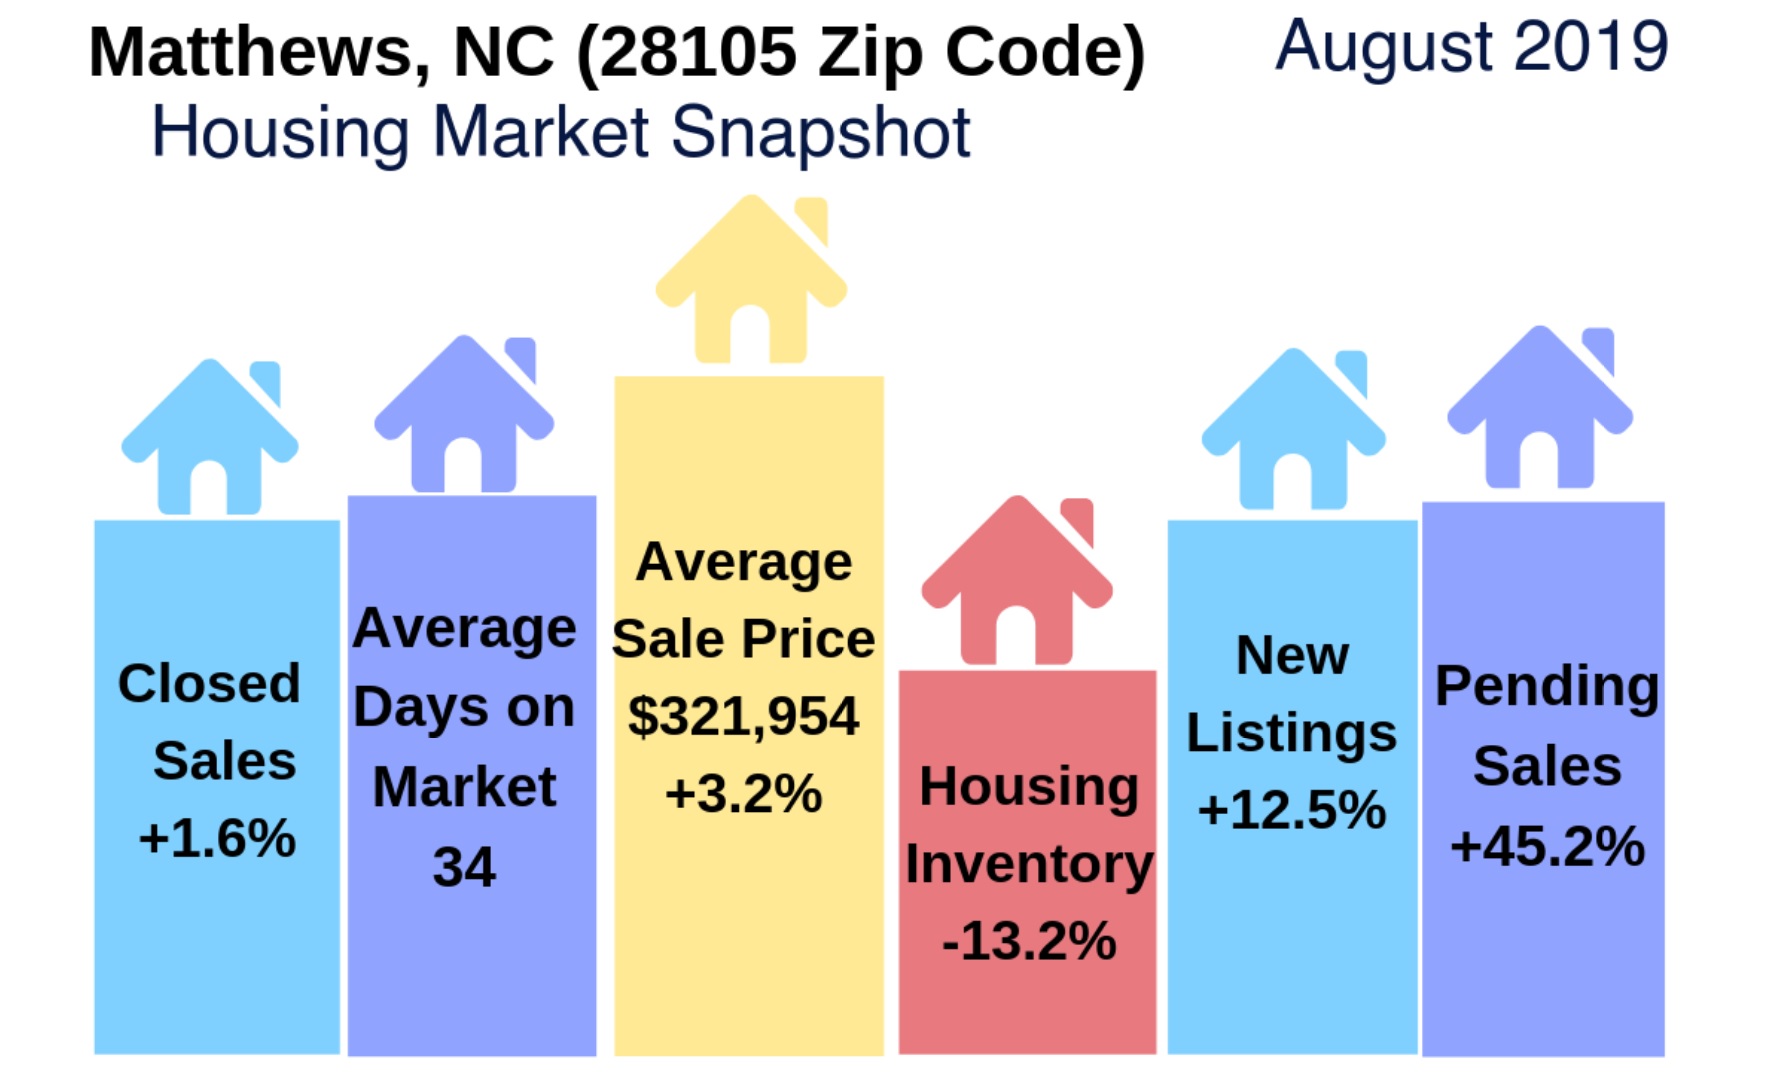 Matthews (28105 Zip Code) Real Estate Report: August 2019